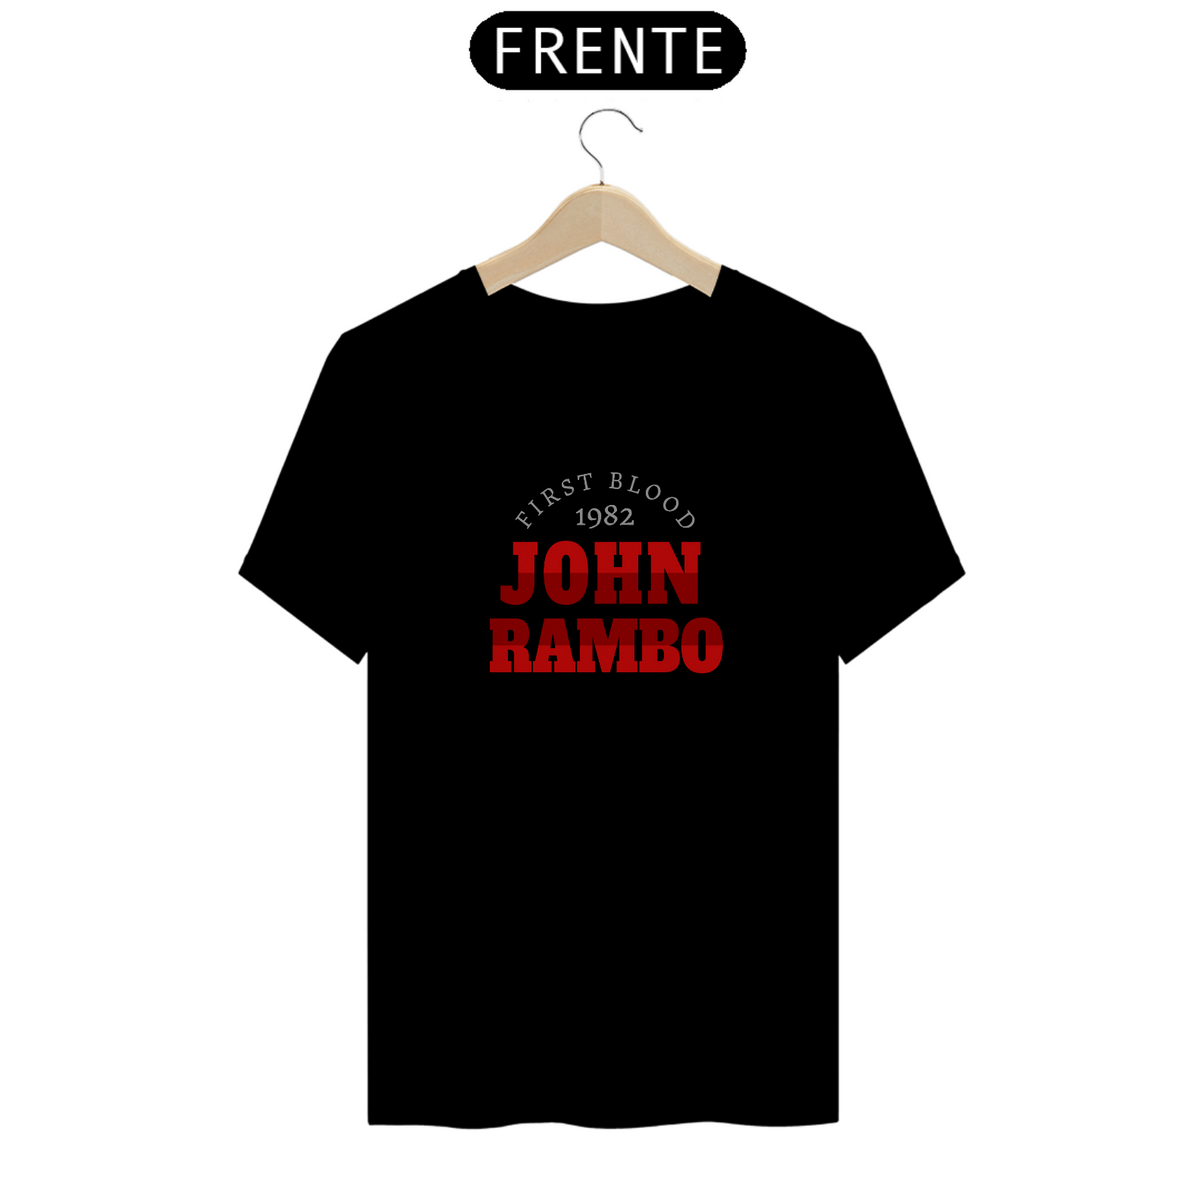 Nome do produto: Camiseta John Rambo